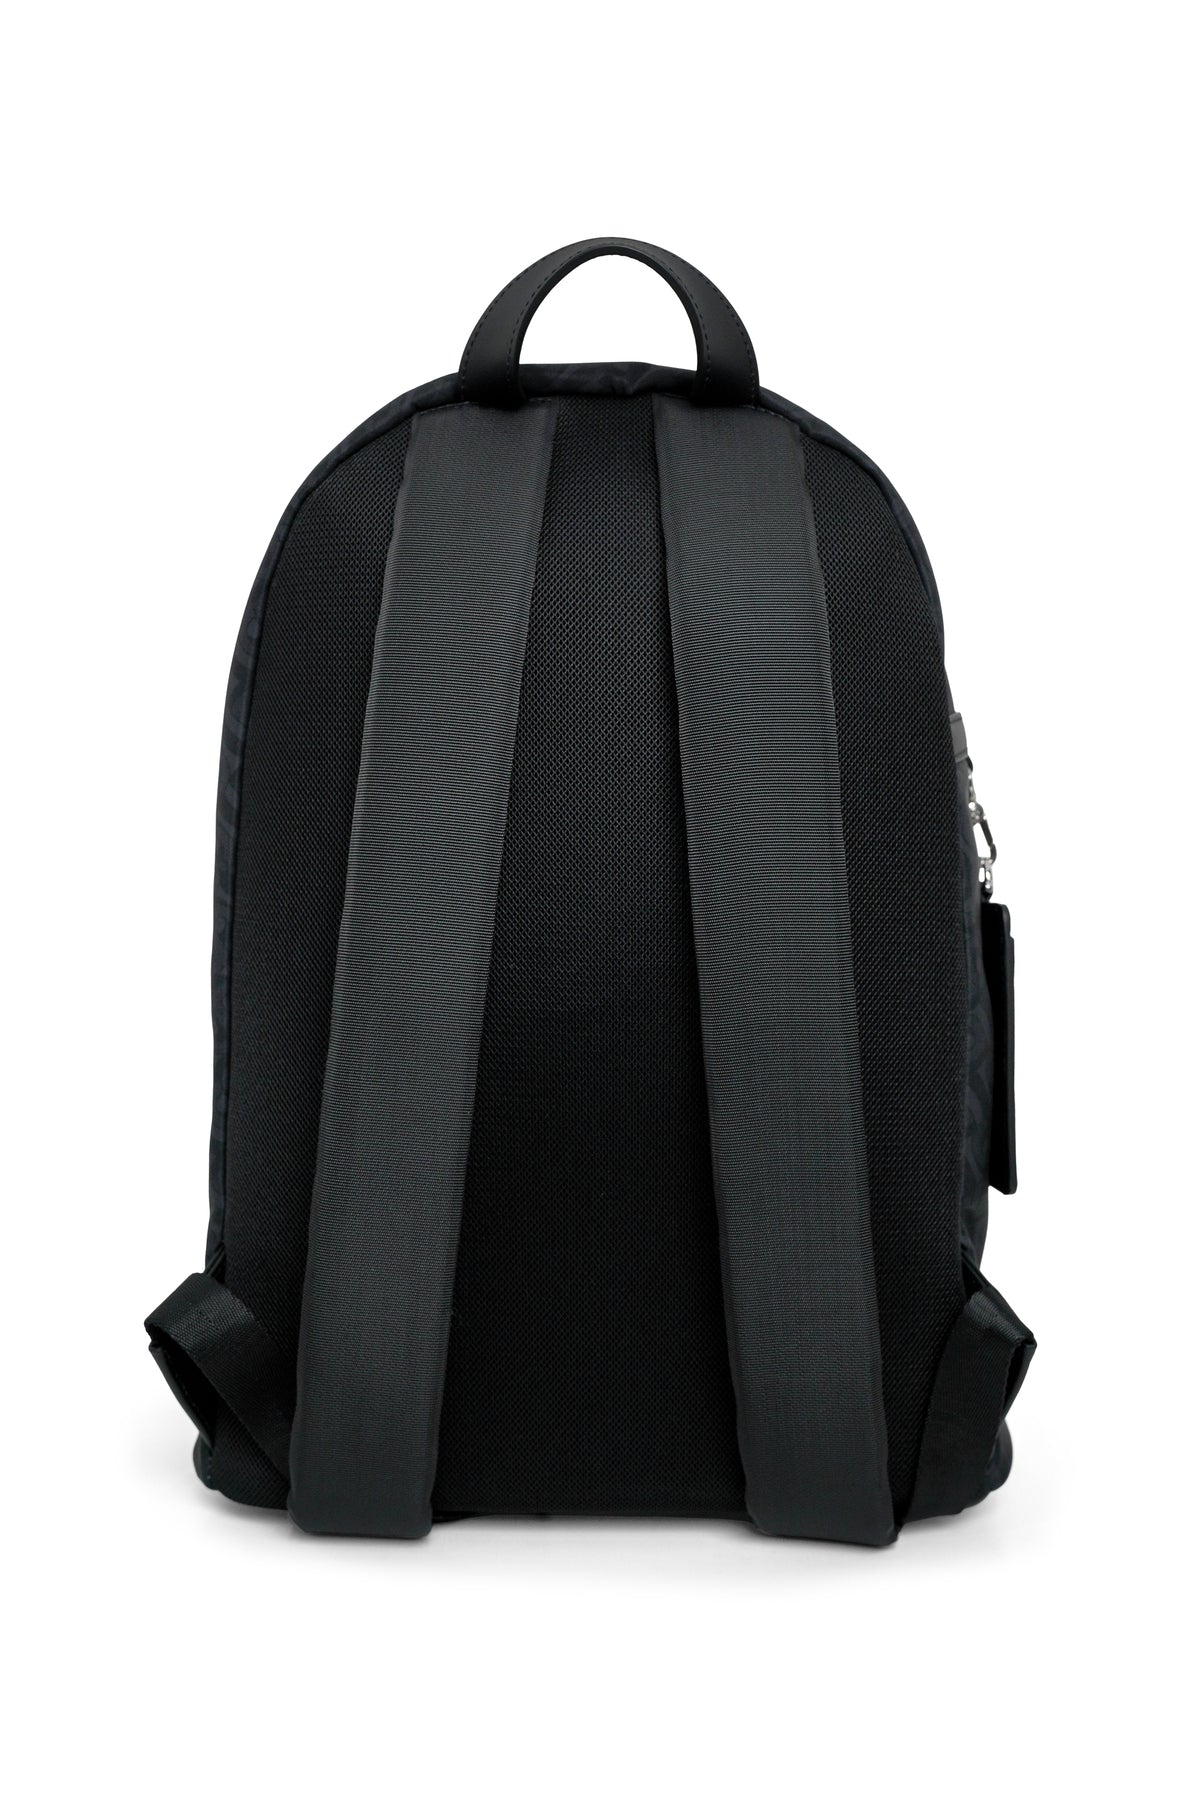 Bimu Backpack - Black – Buttonscarves